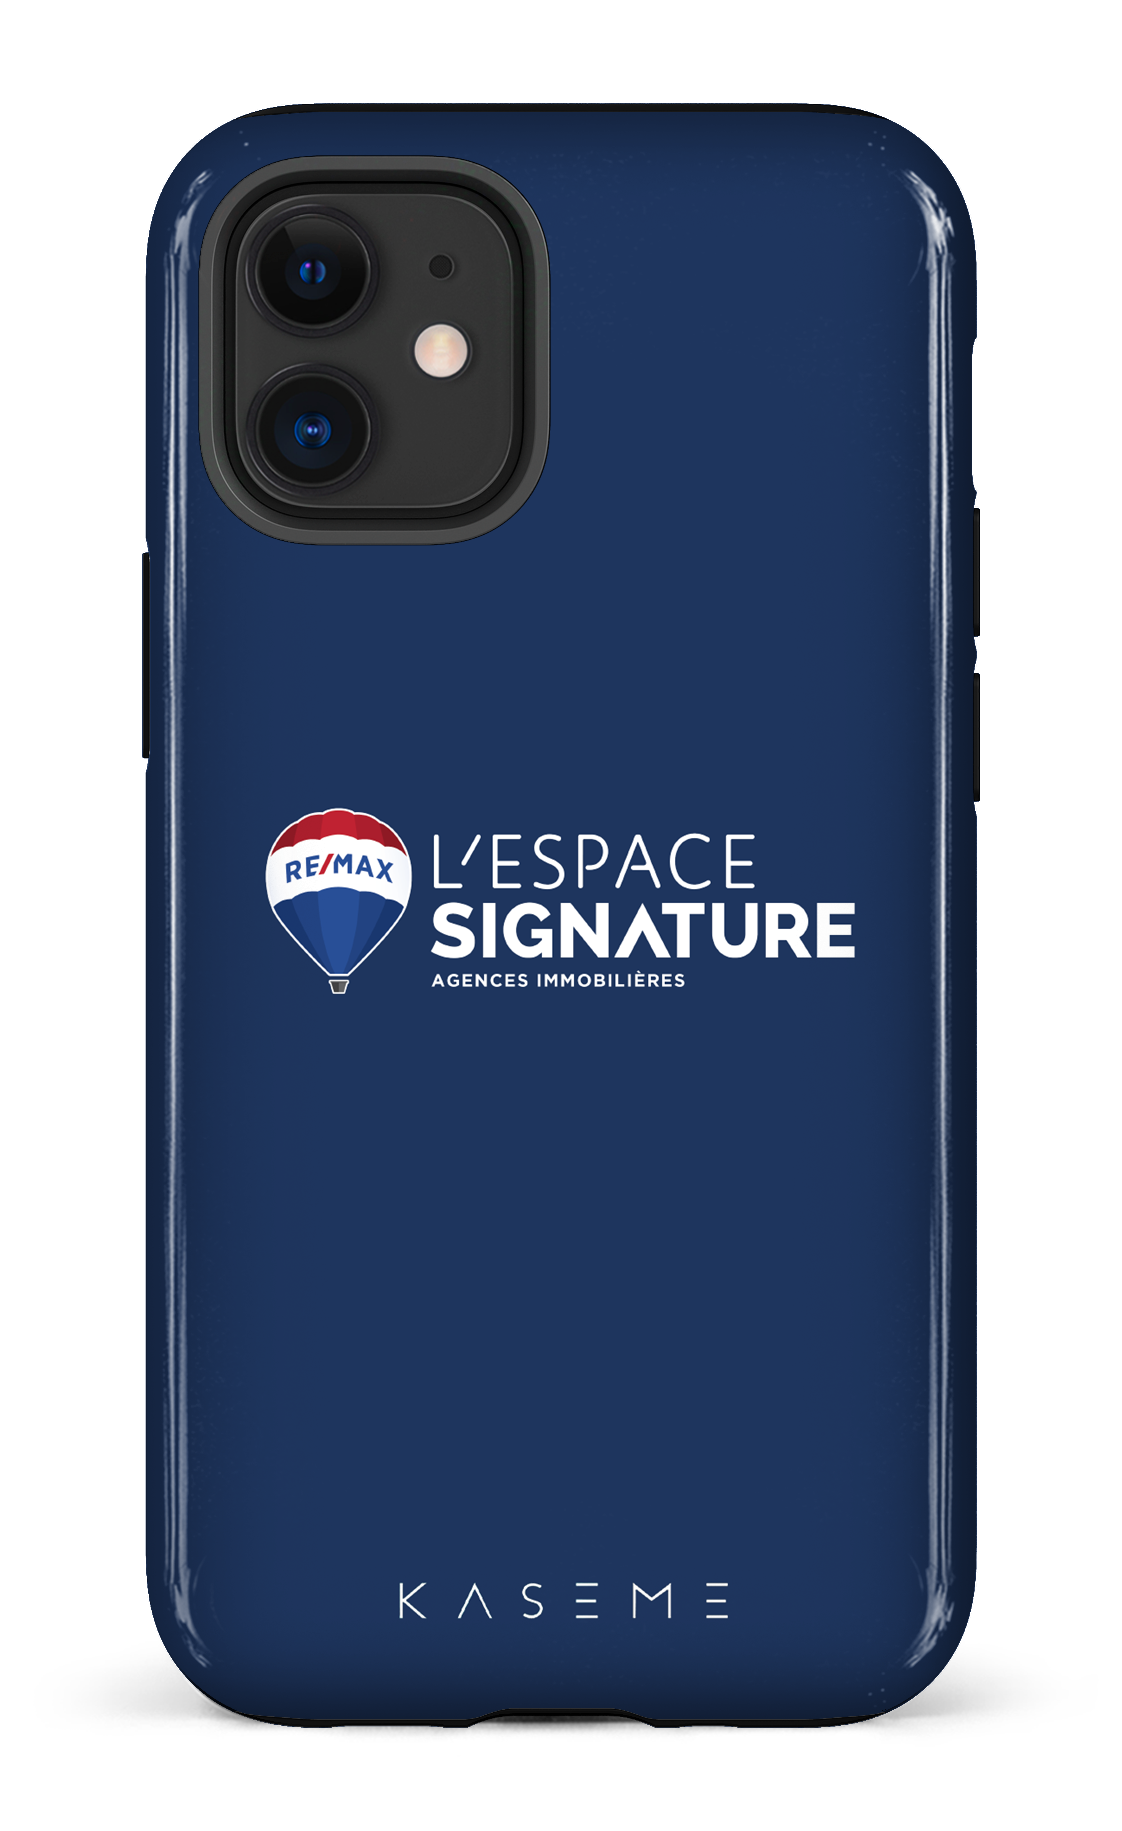 Remax Signature L'espace Bleu - iPhone 12 Mini